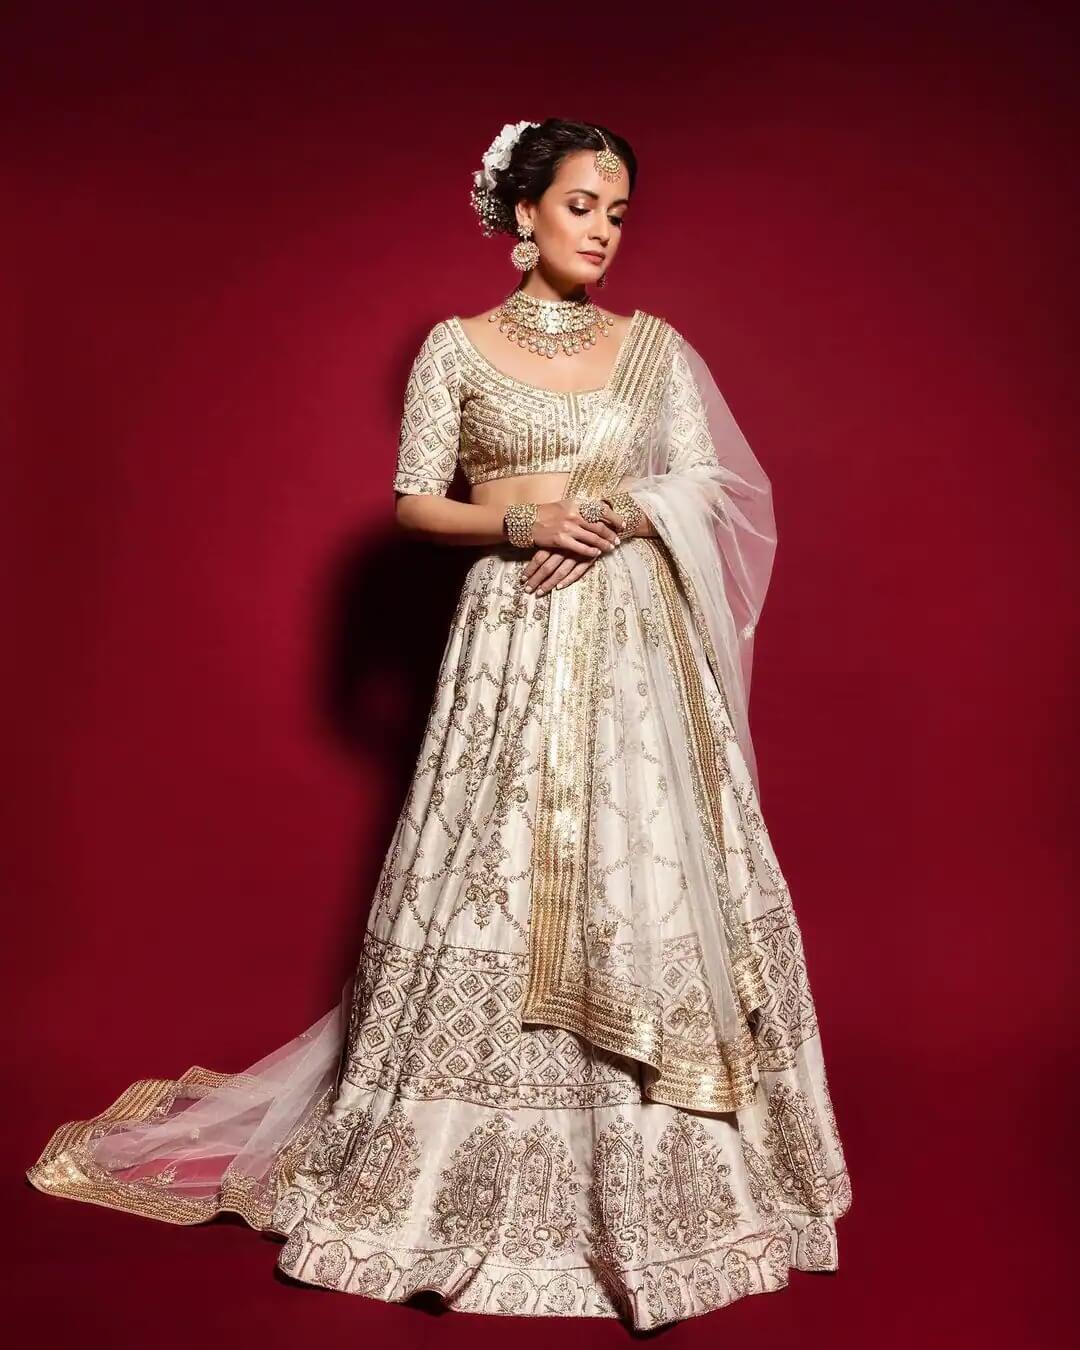 Rehnaa Hai Terre Dil Mein  Fame Actress Dia Mirza in a white and gold lehenga set